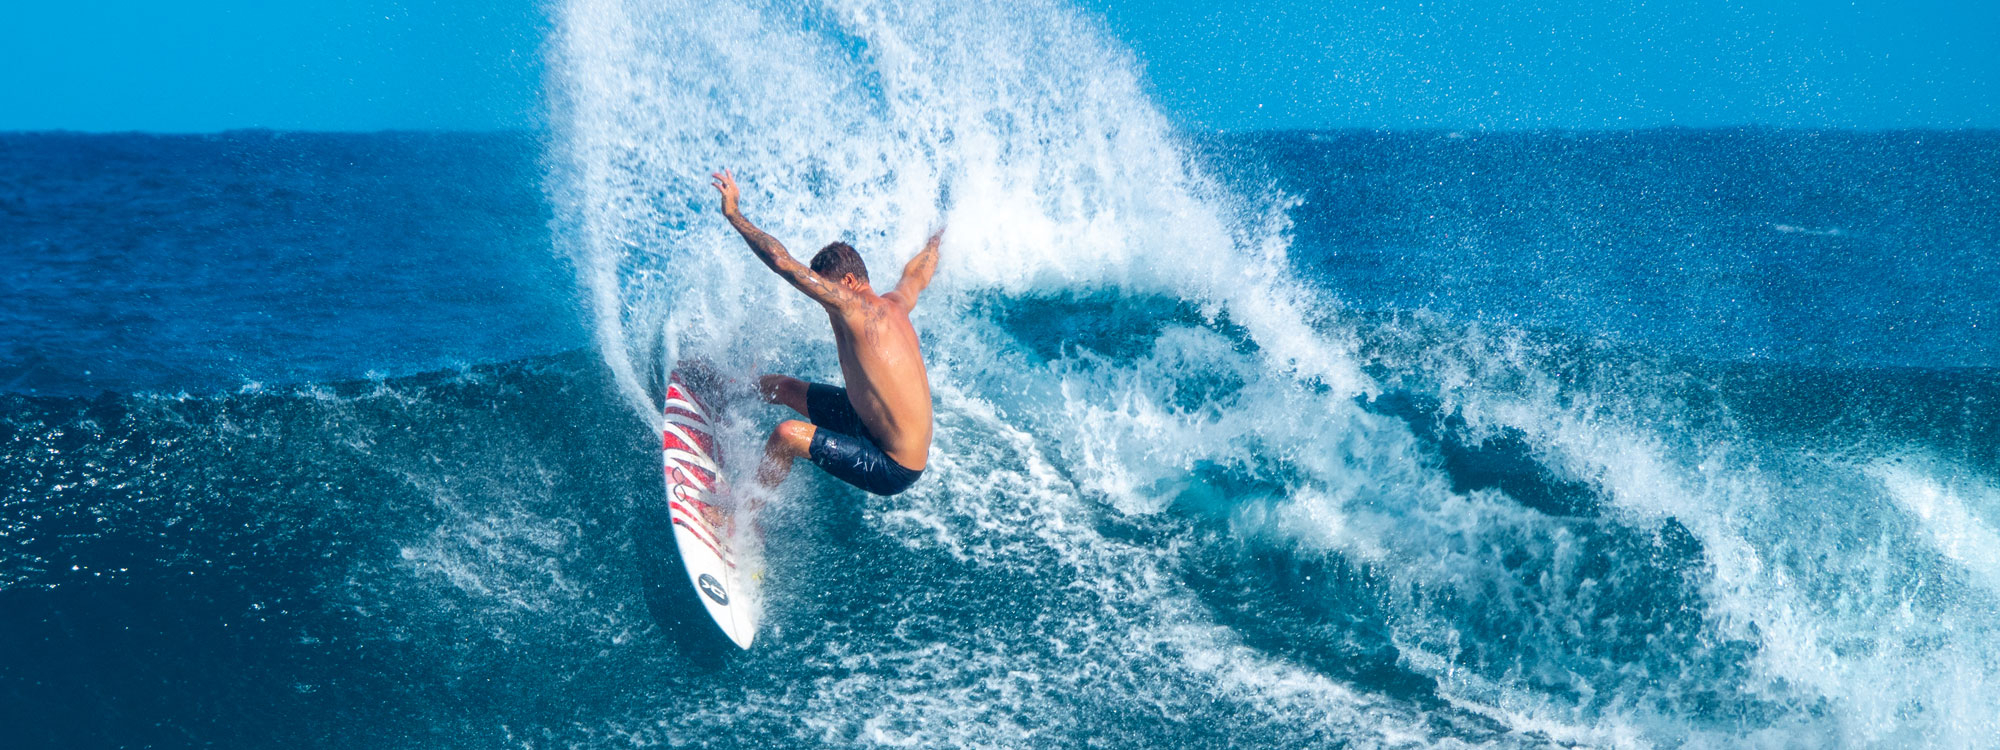 Surfer reitet auf Welle horizontal